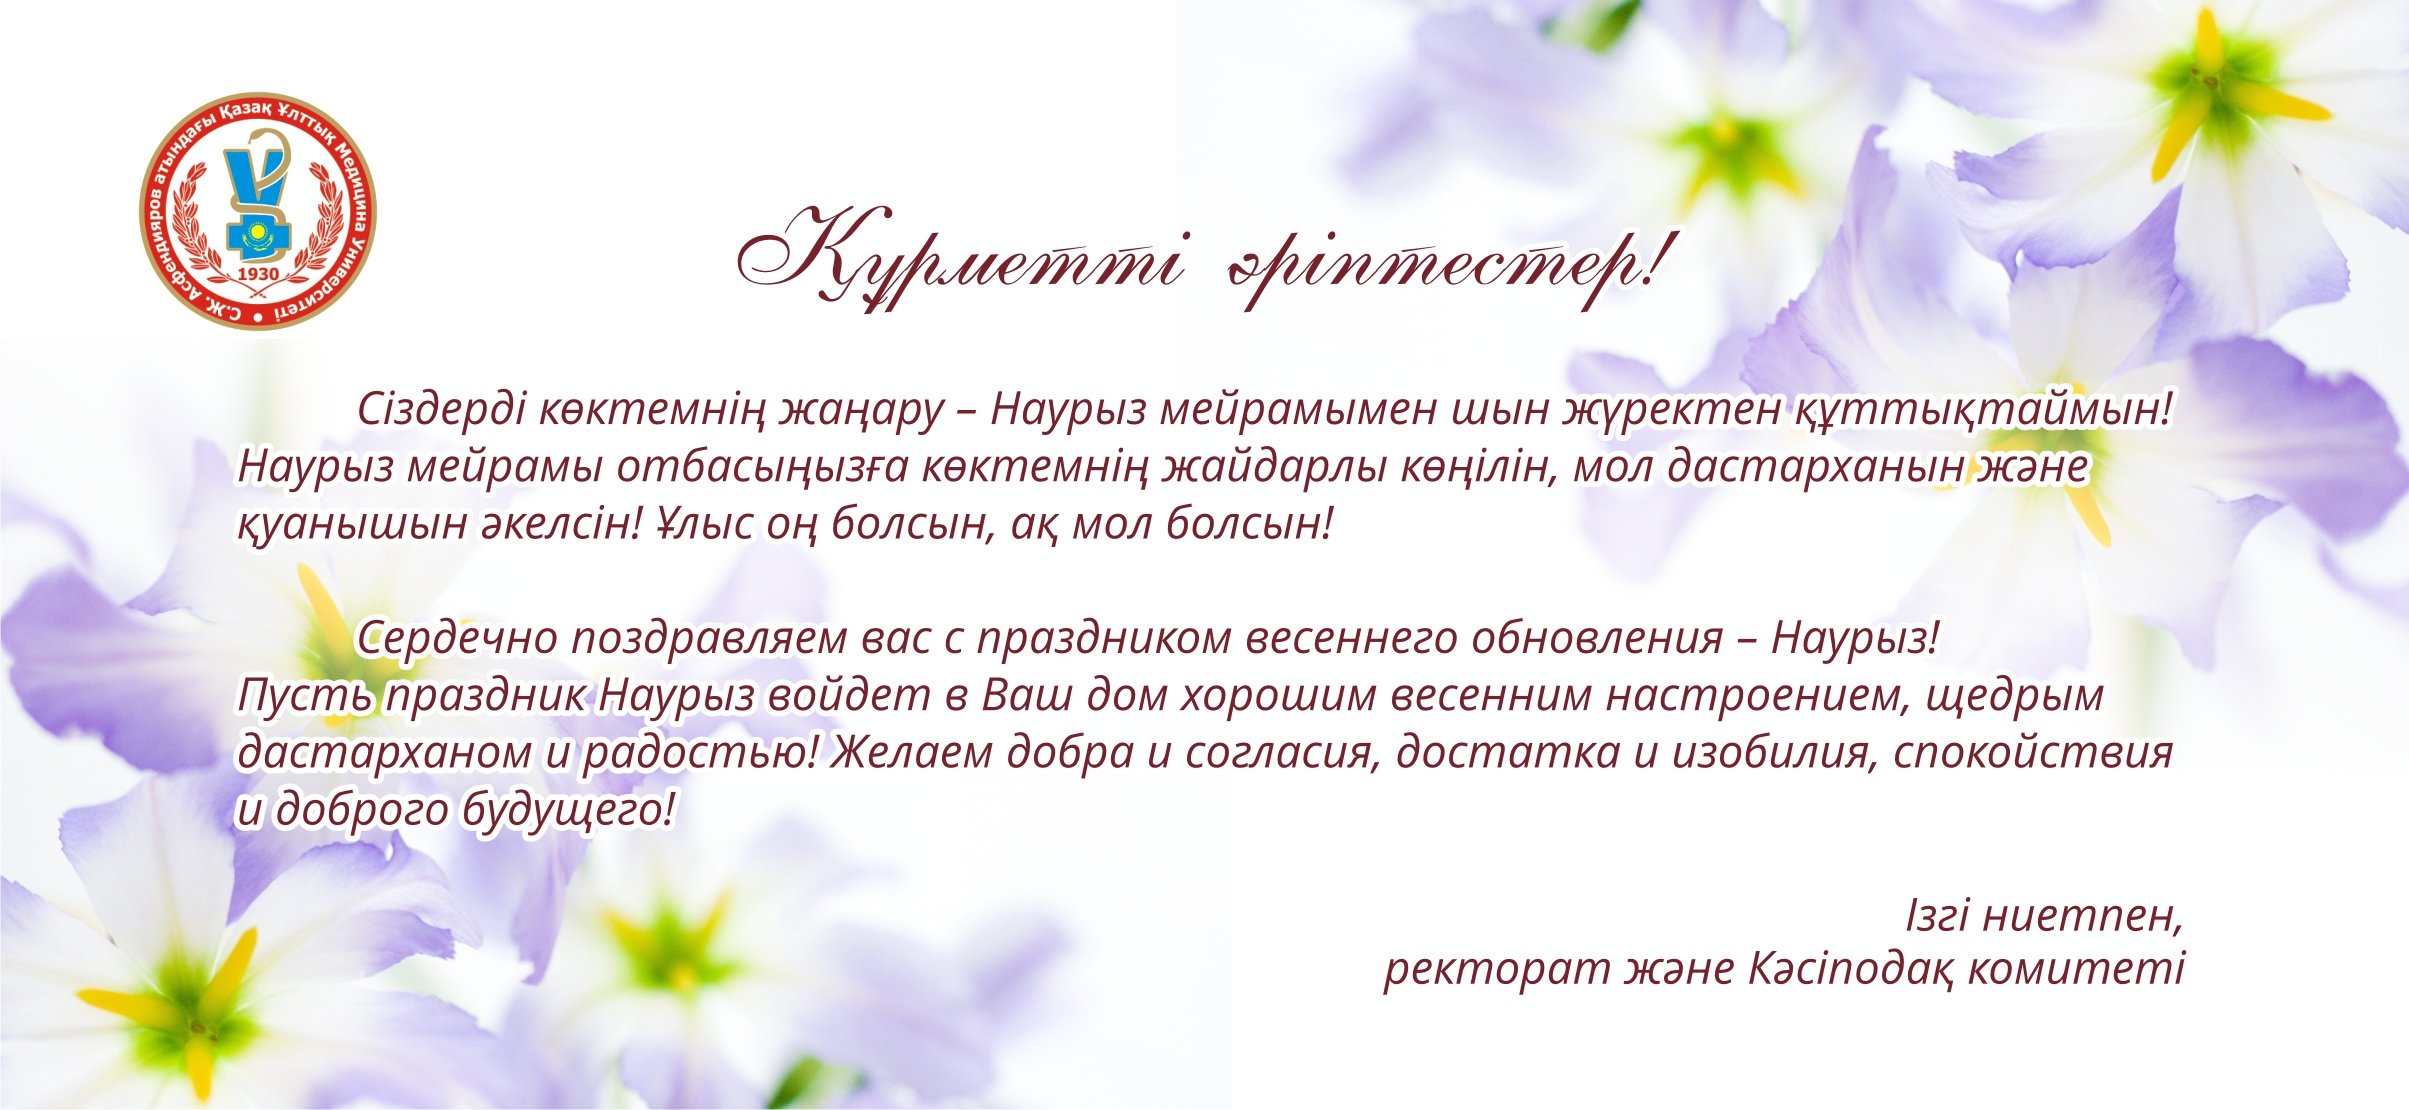 Красивое поздравление с наурызом на русском. Пригласительные открытки на Наурыз. Приглашение на праздник Наурыз. Открытка с Наурызом на казахском языке. Поздравление с Наурызом на казахском.